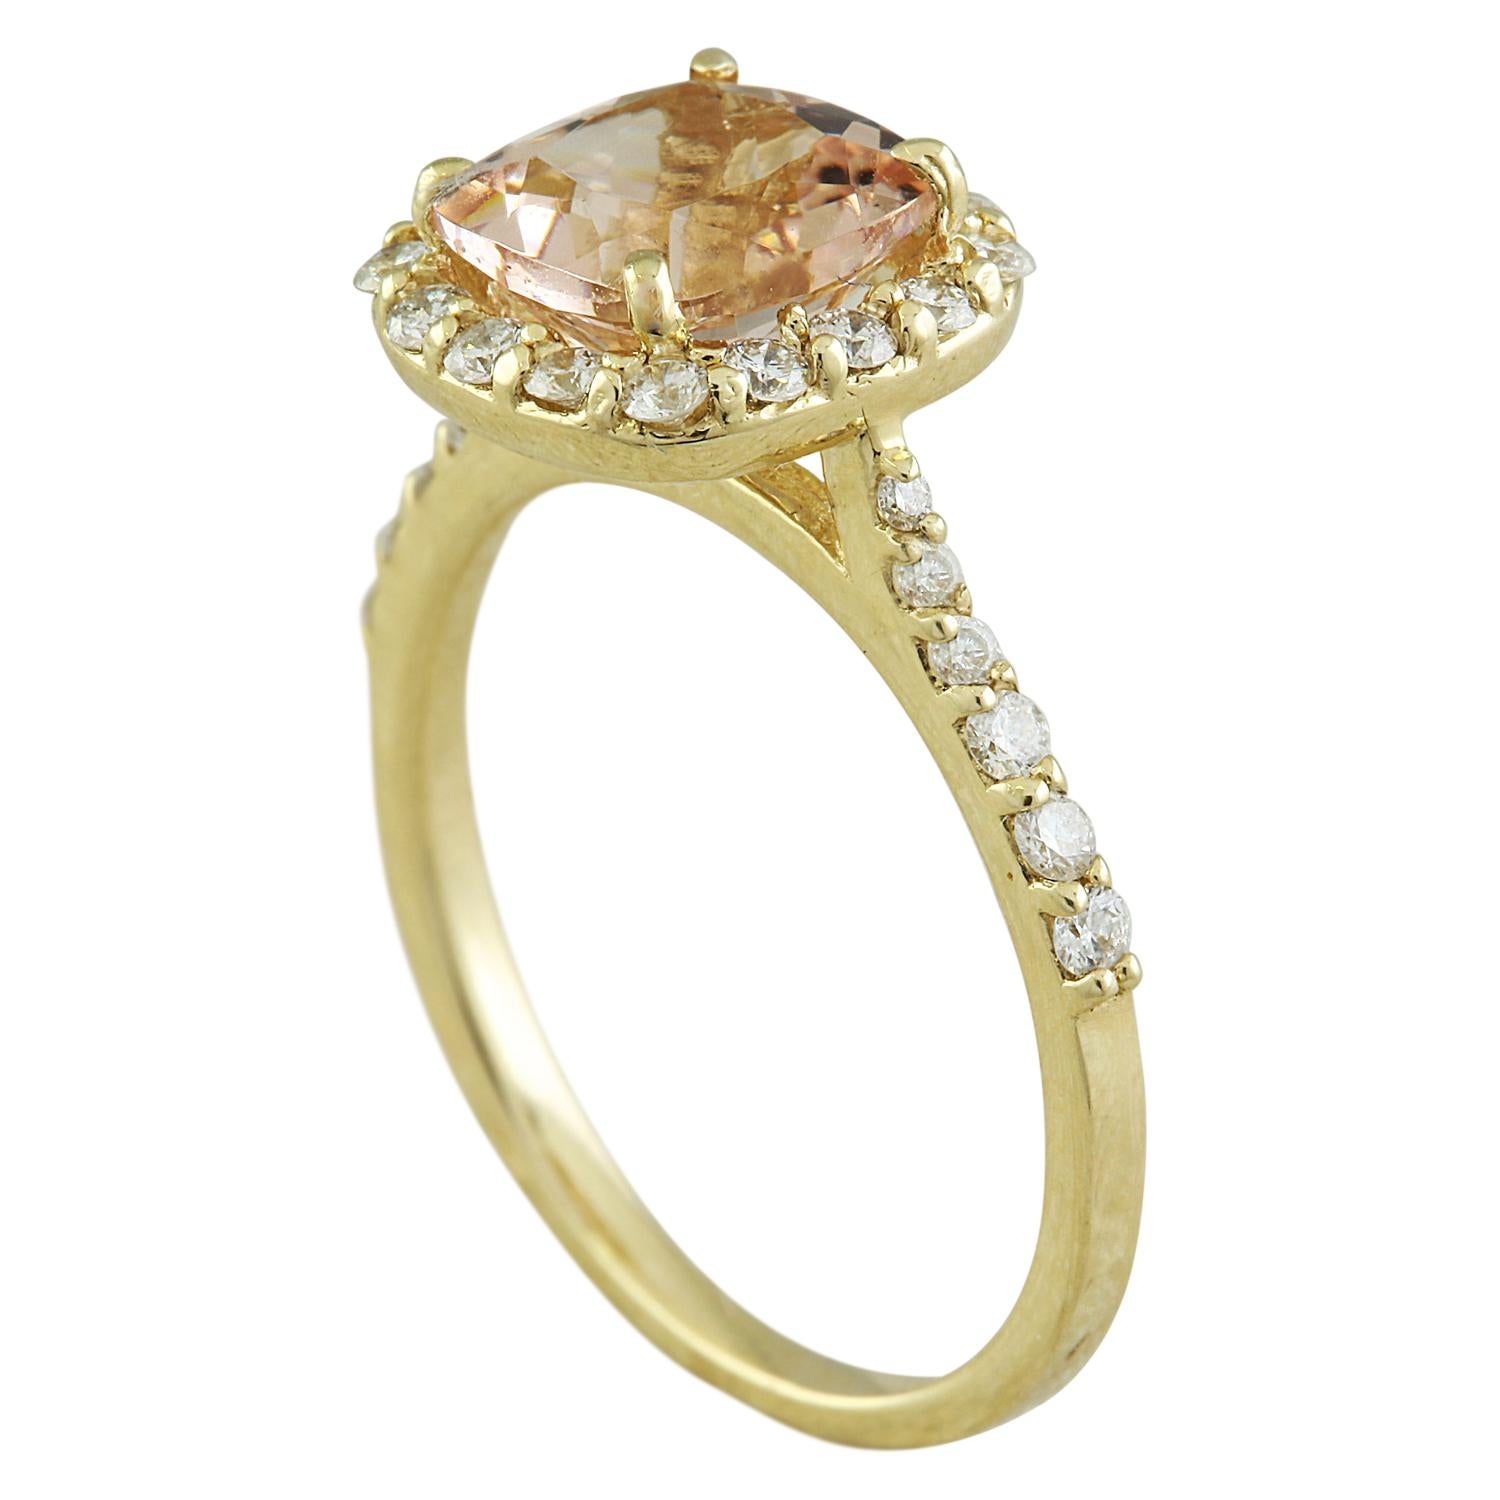 2.32 Carat Natural Morganite 14 Karat Solid Yellow Gold Diamond Ring
Estampillé : 14K 
Poids total de l'anneau : 3 grammes 
Poids de la Morganite : 1.82 Carat (7.50x7.50 Millimètres)  
Poids du diamant : 0,50 carat (couleur F-G, pureté